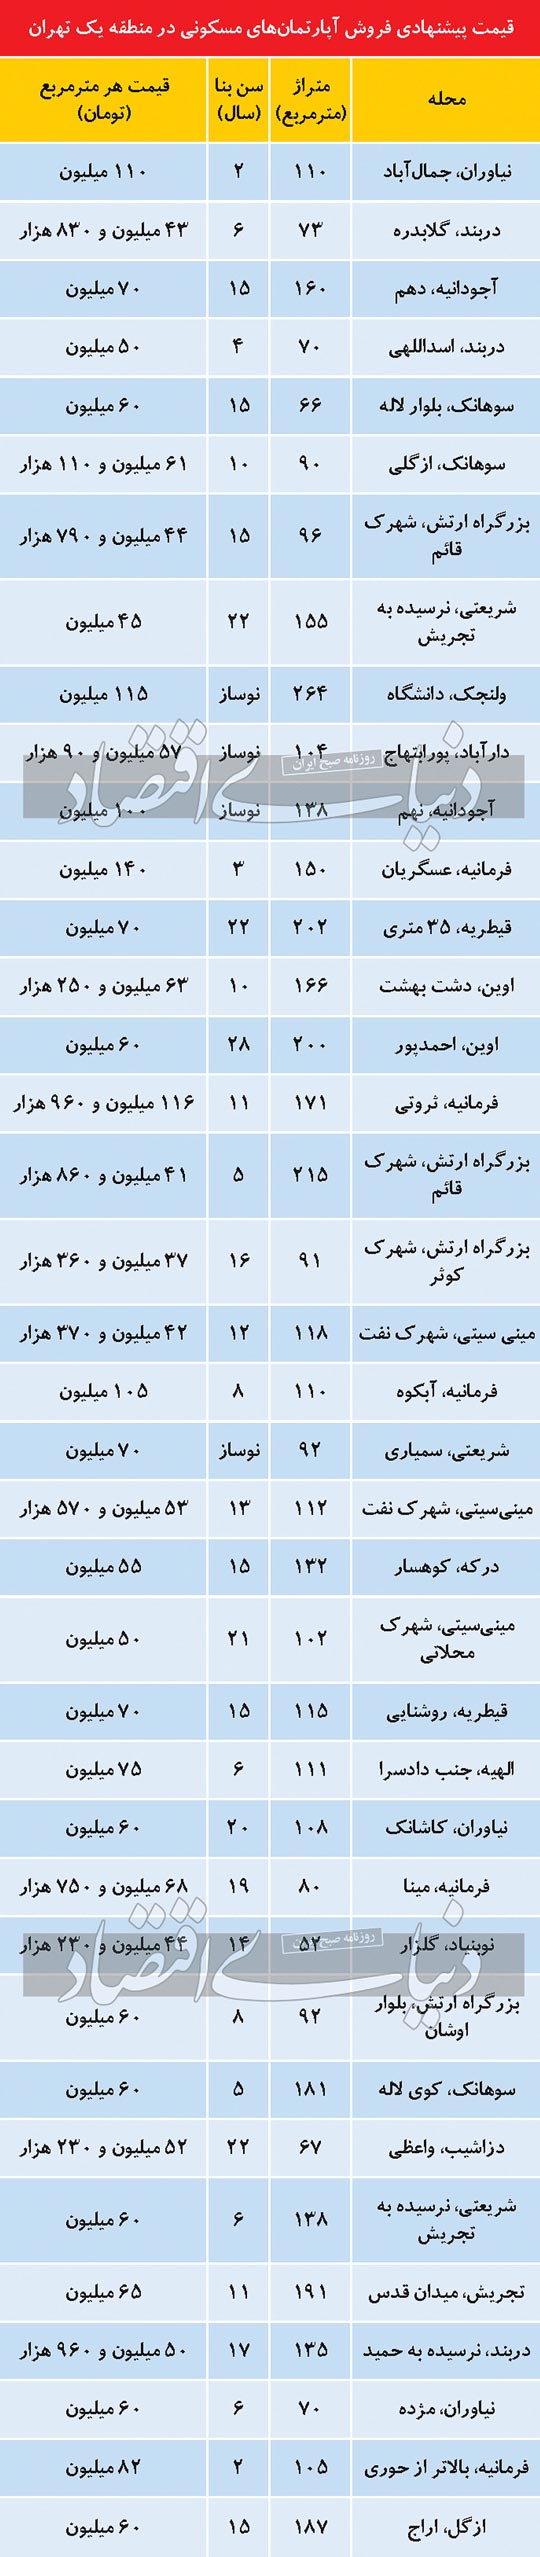 قیمت روز آپارتمان در منطقه یک تهران